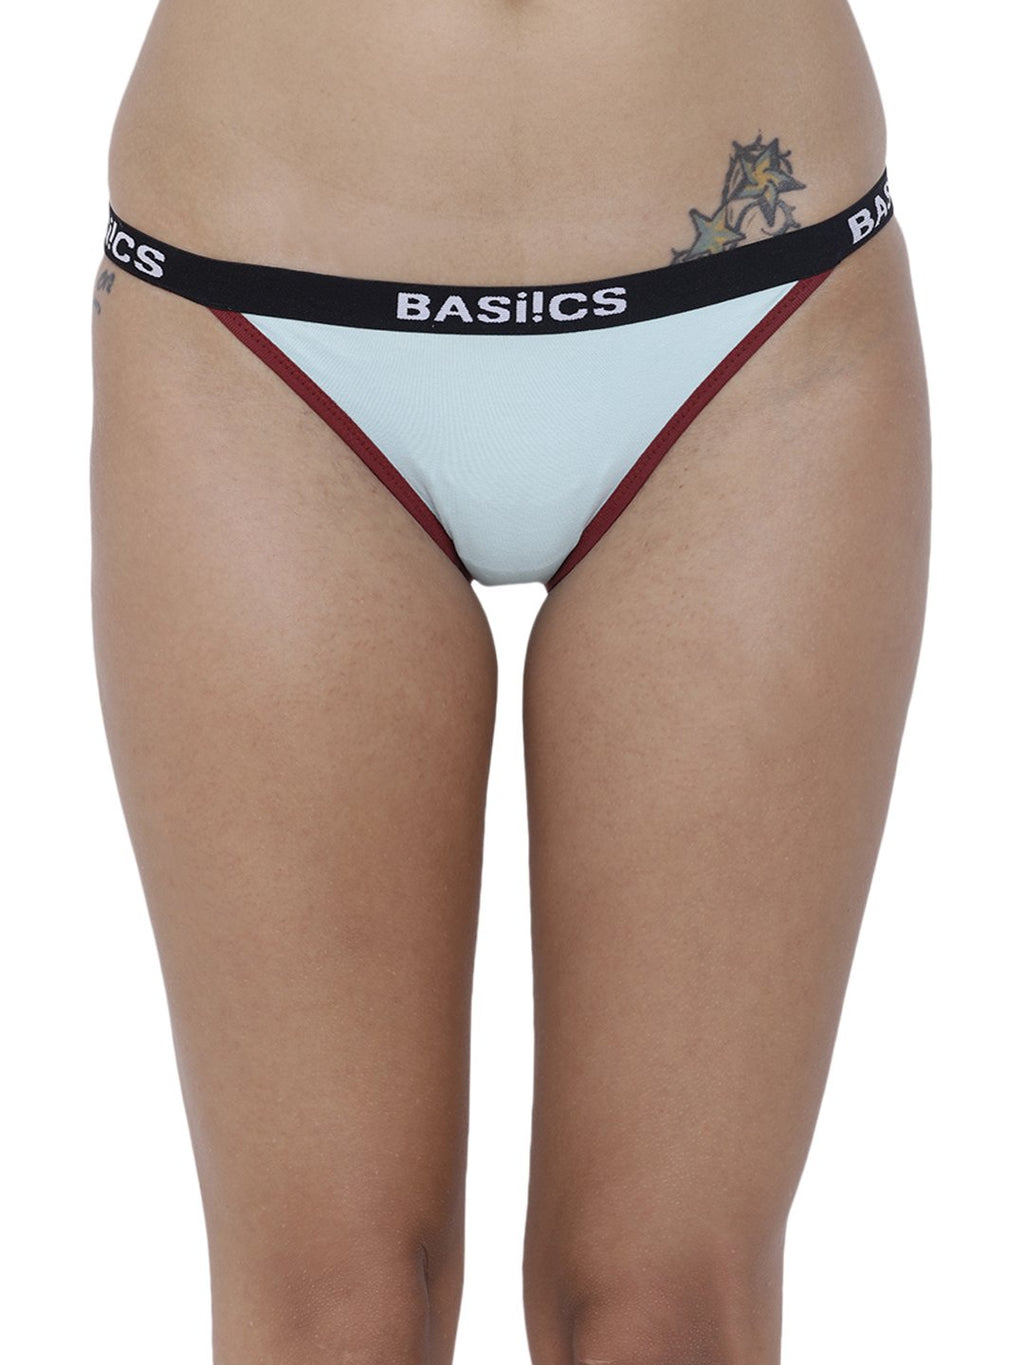 Briefs women's underwear, Lingerie Panties